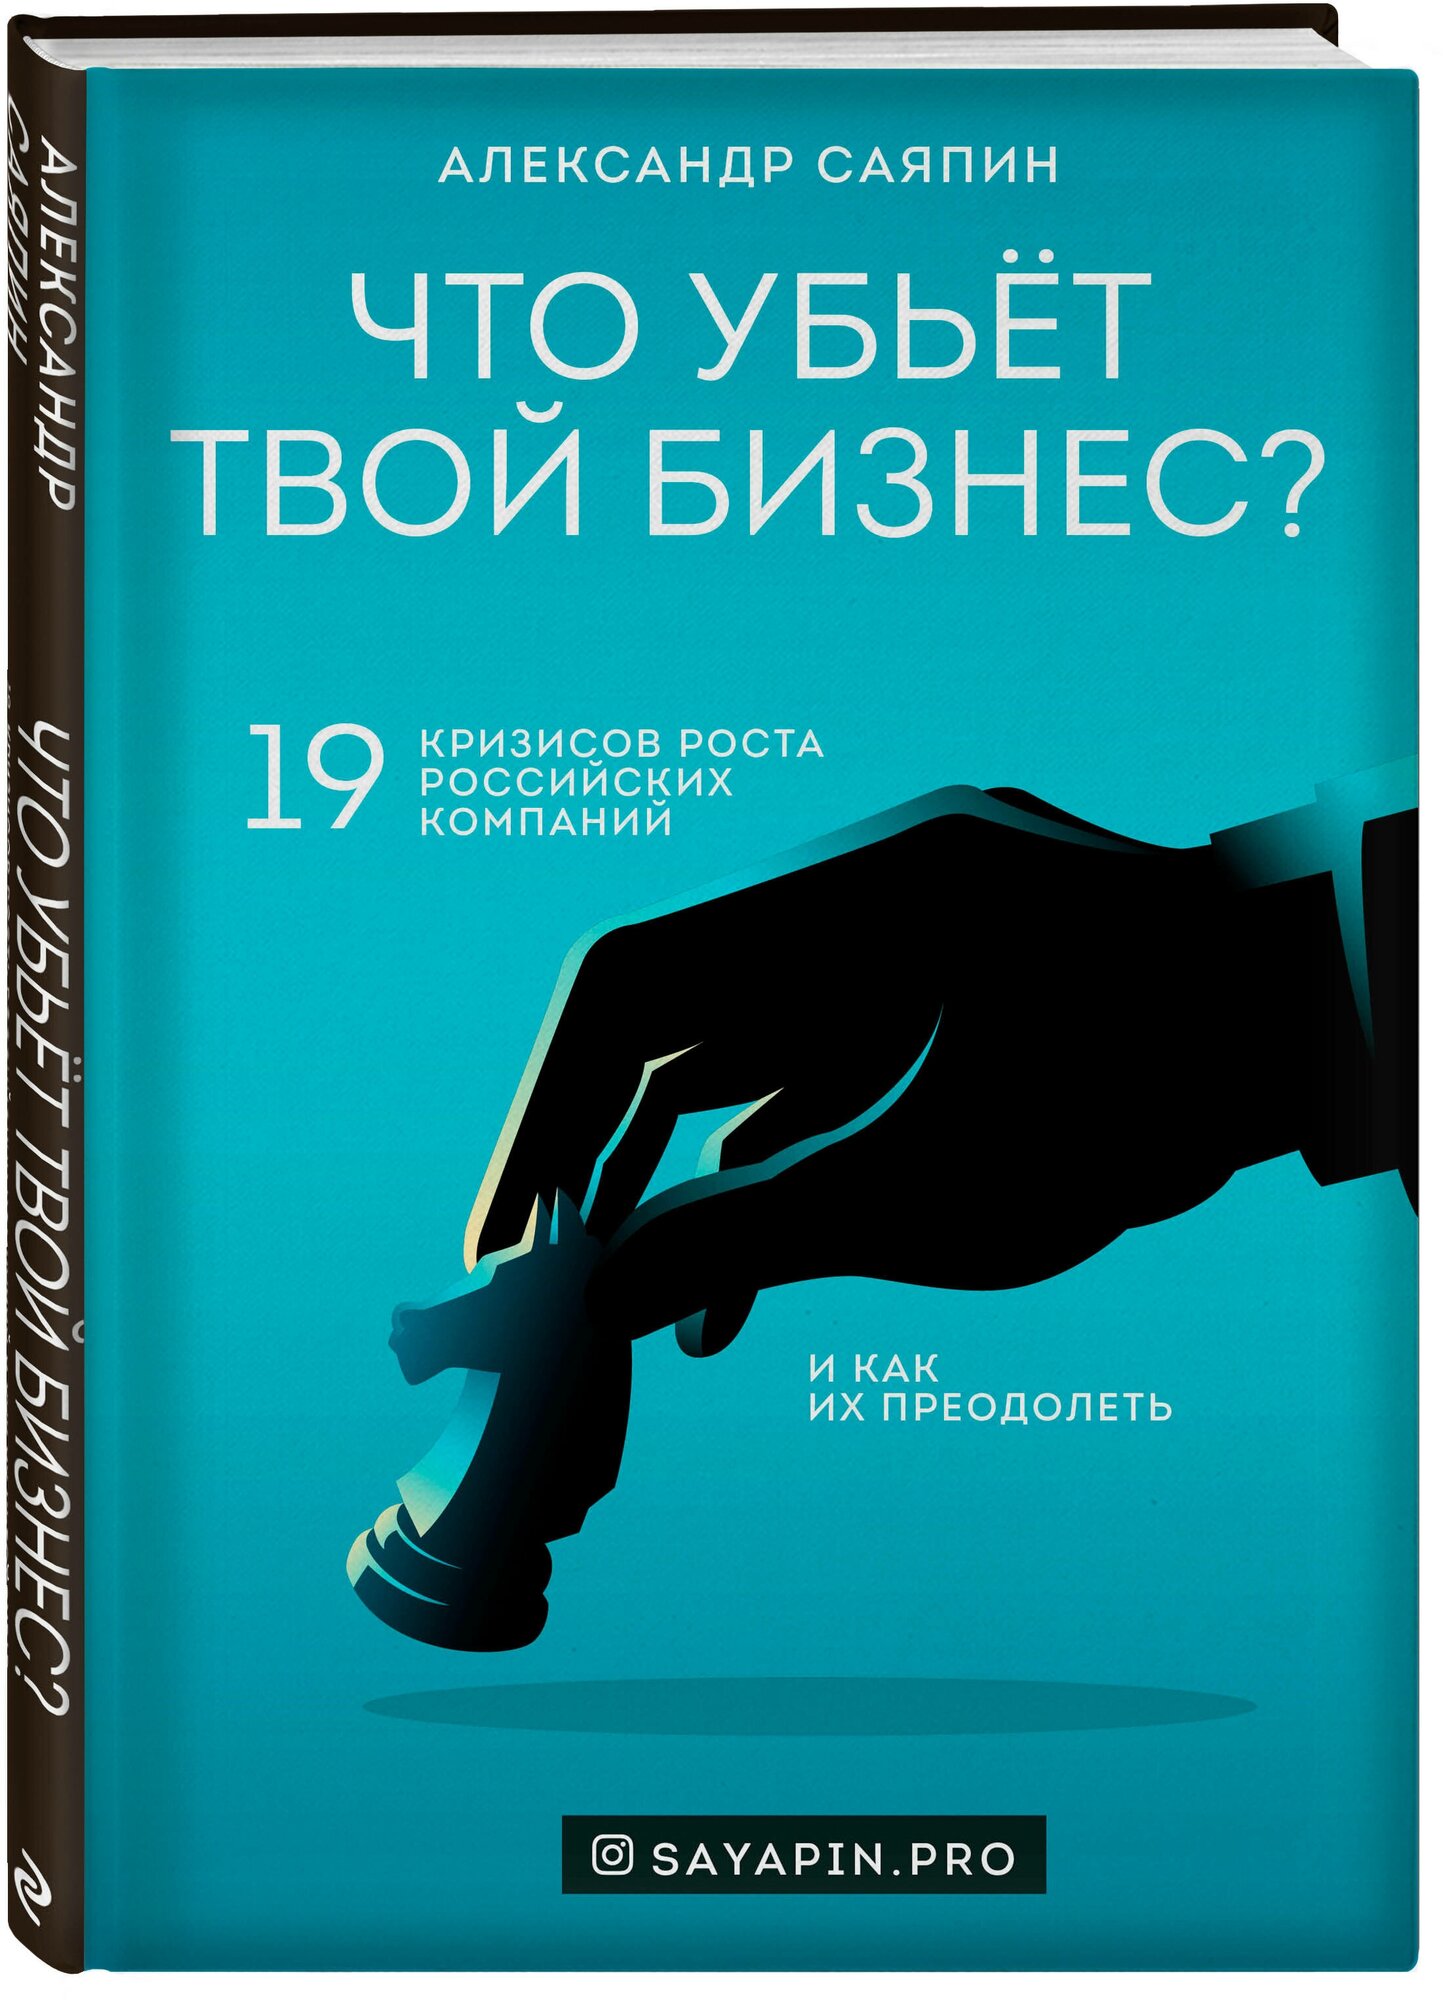 Саяпин А. В. "Что убьёт твой бизнес? 19 кризисов роста российских компаний и как их преодолеть"